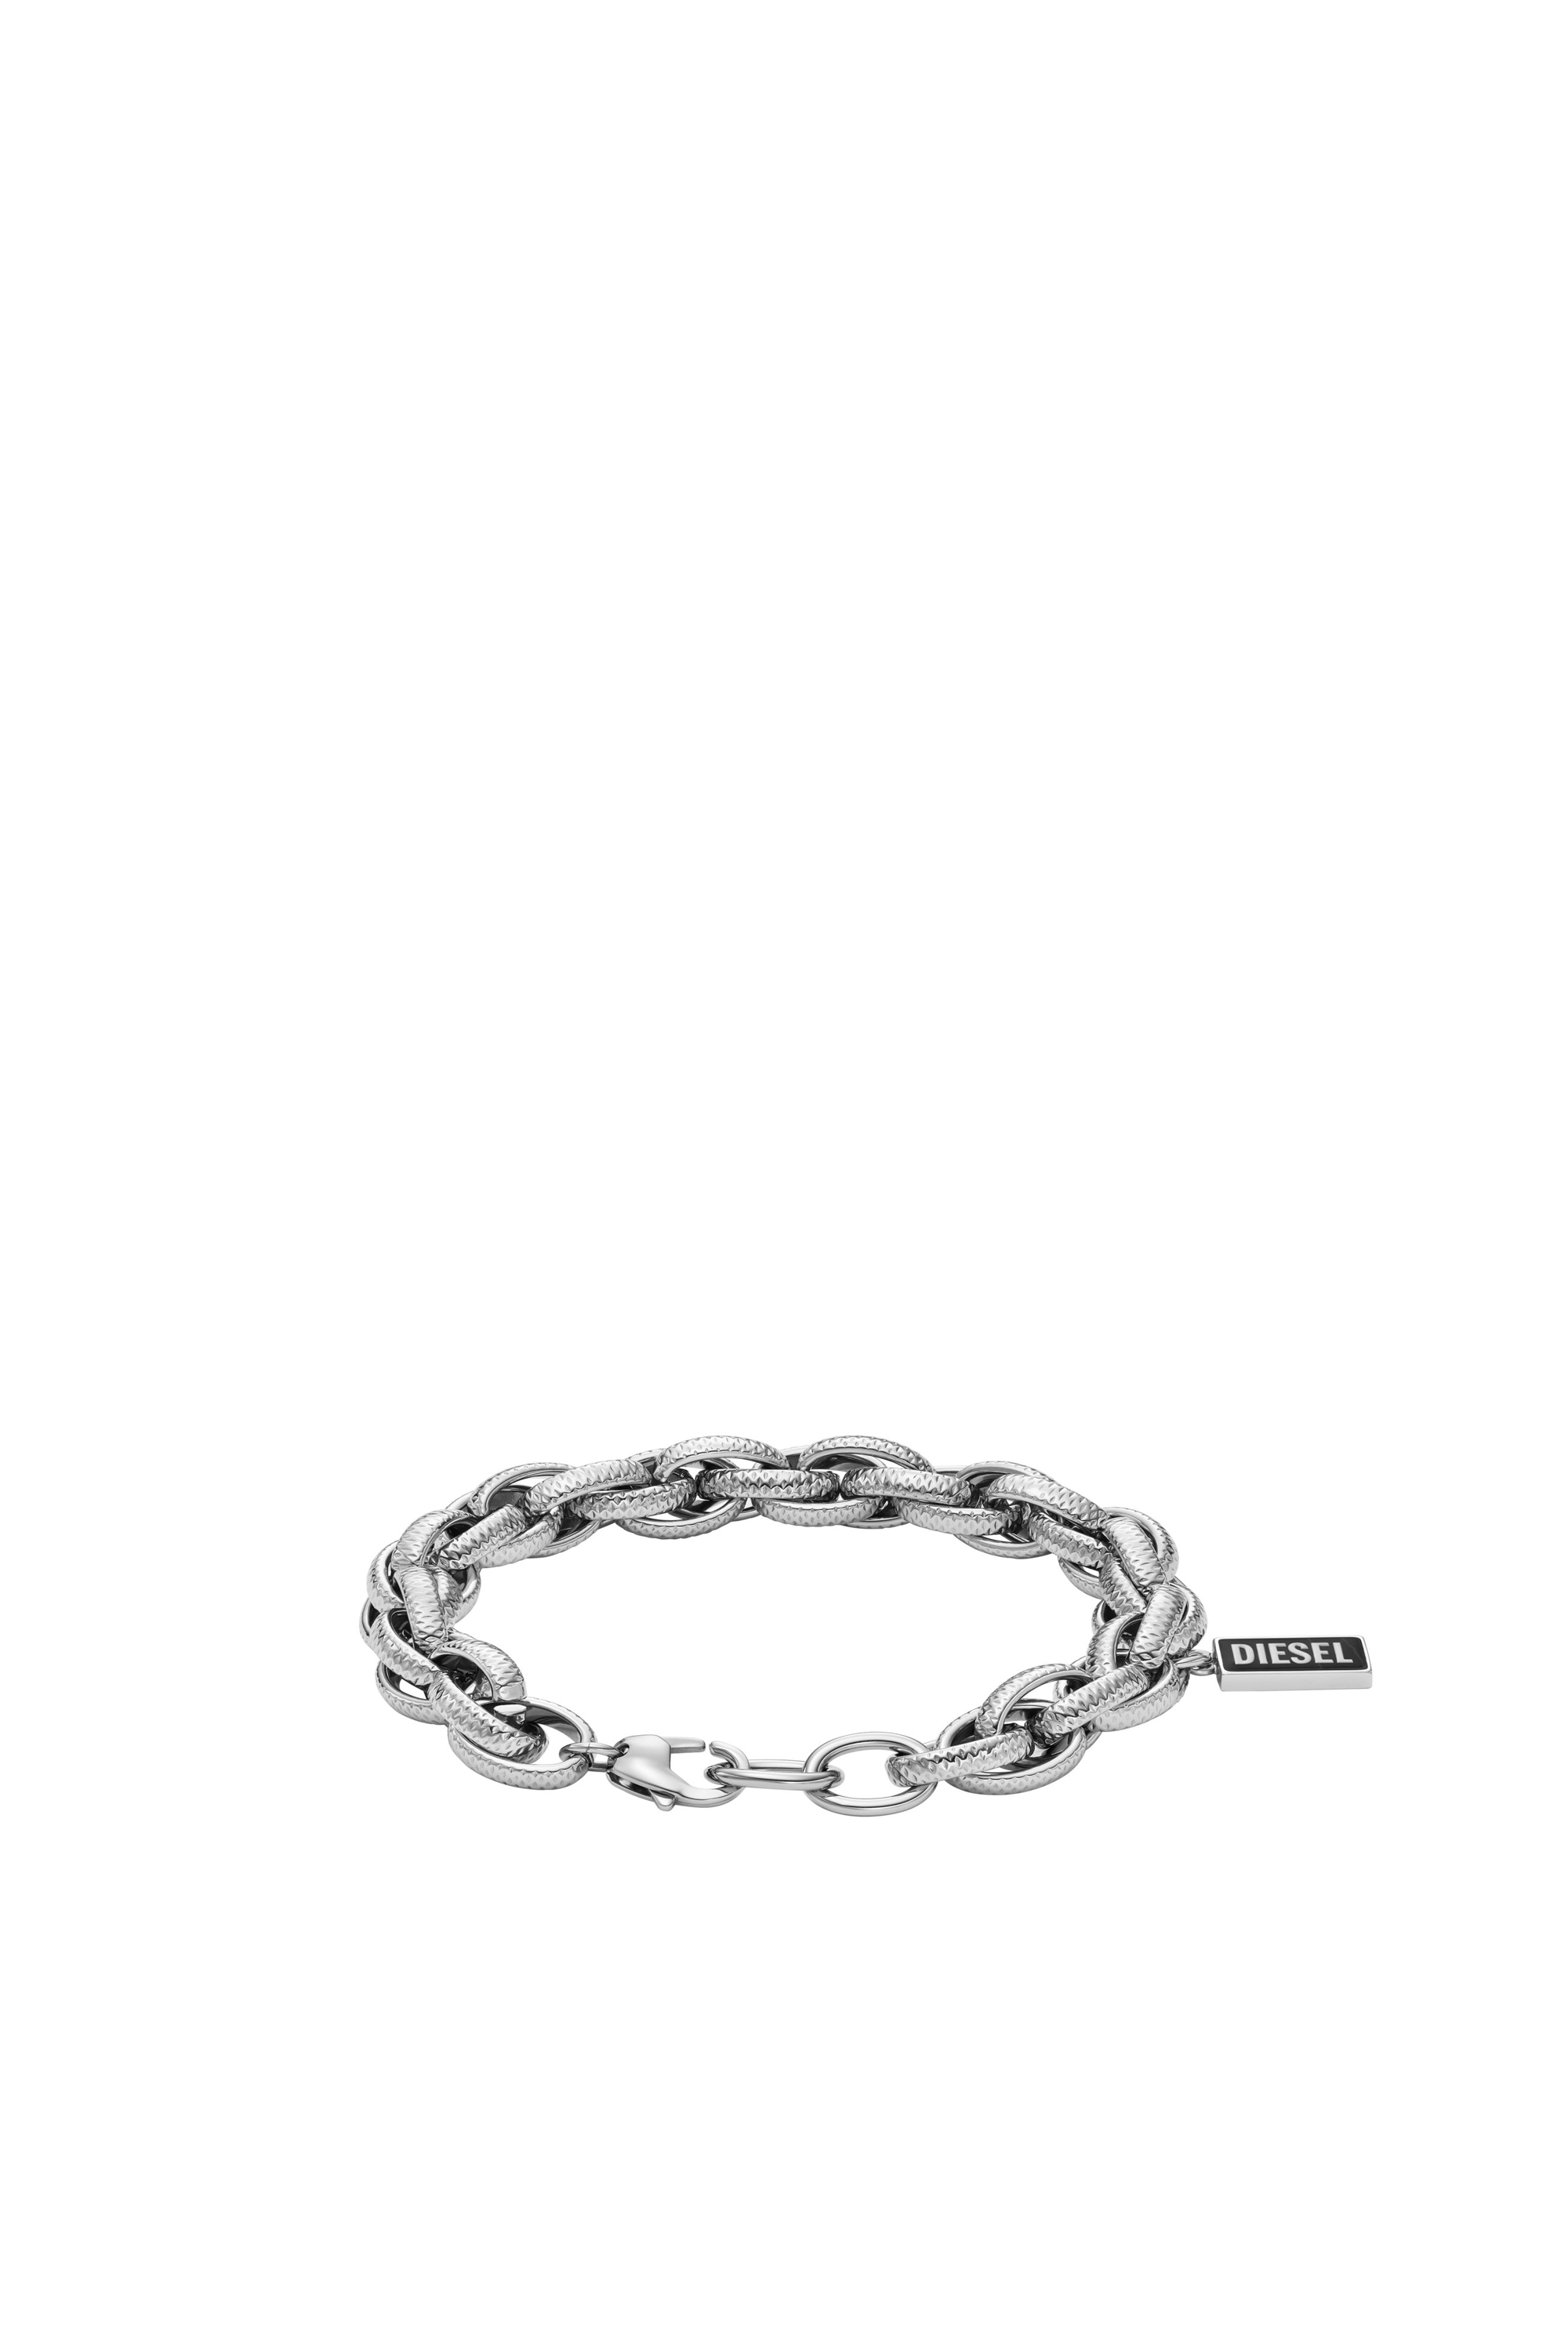 Diesel - DX1514, Mixte Bracelet chaîne avec agate noire in Gris argenté - Image 2